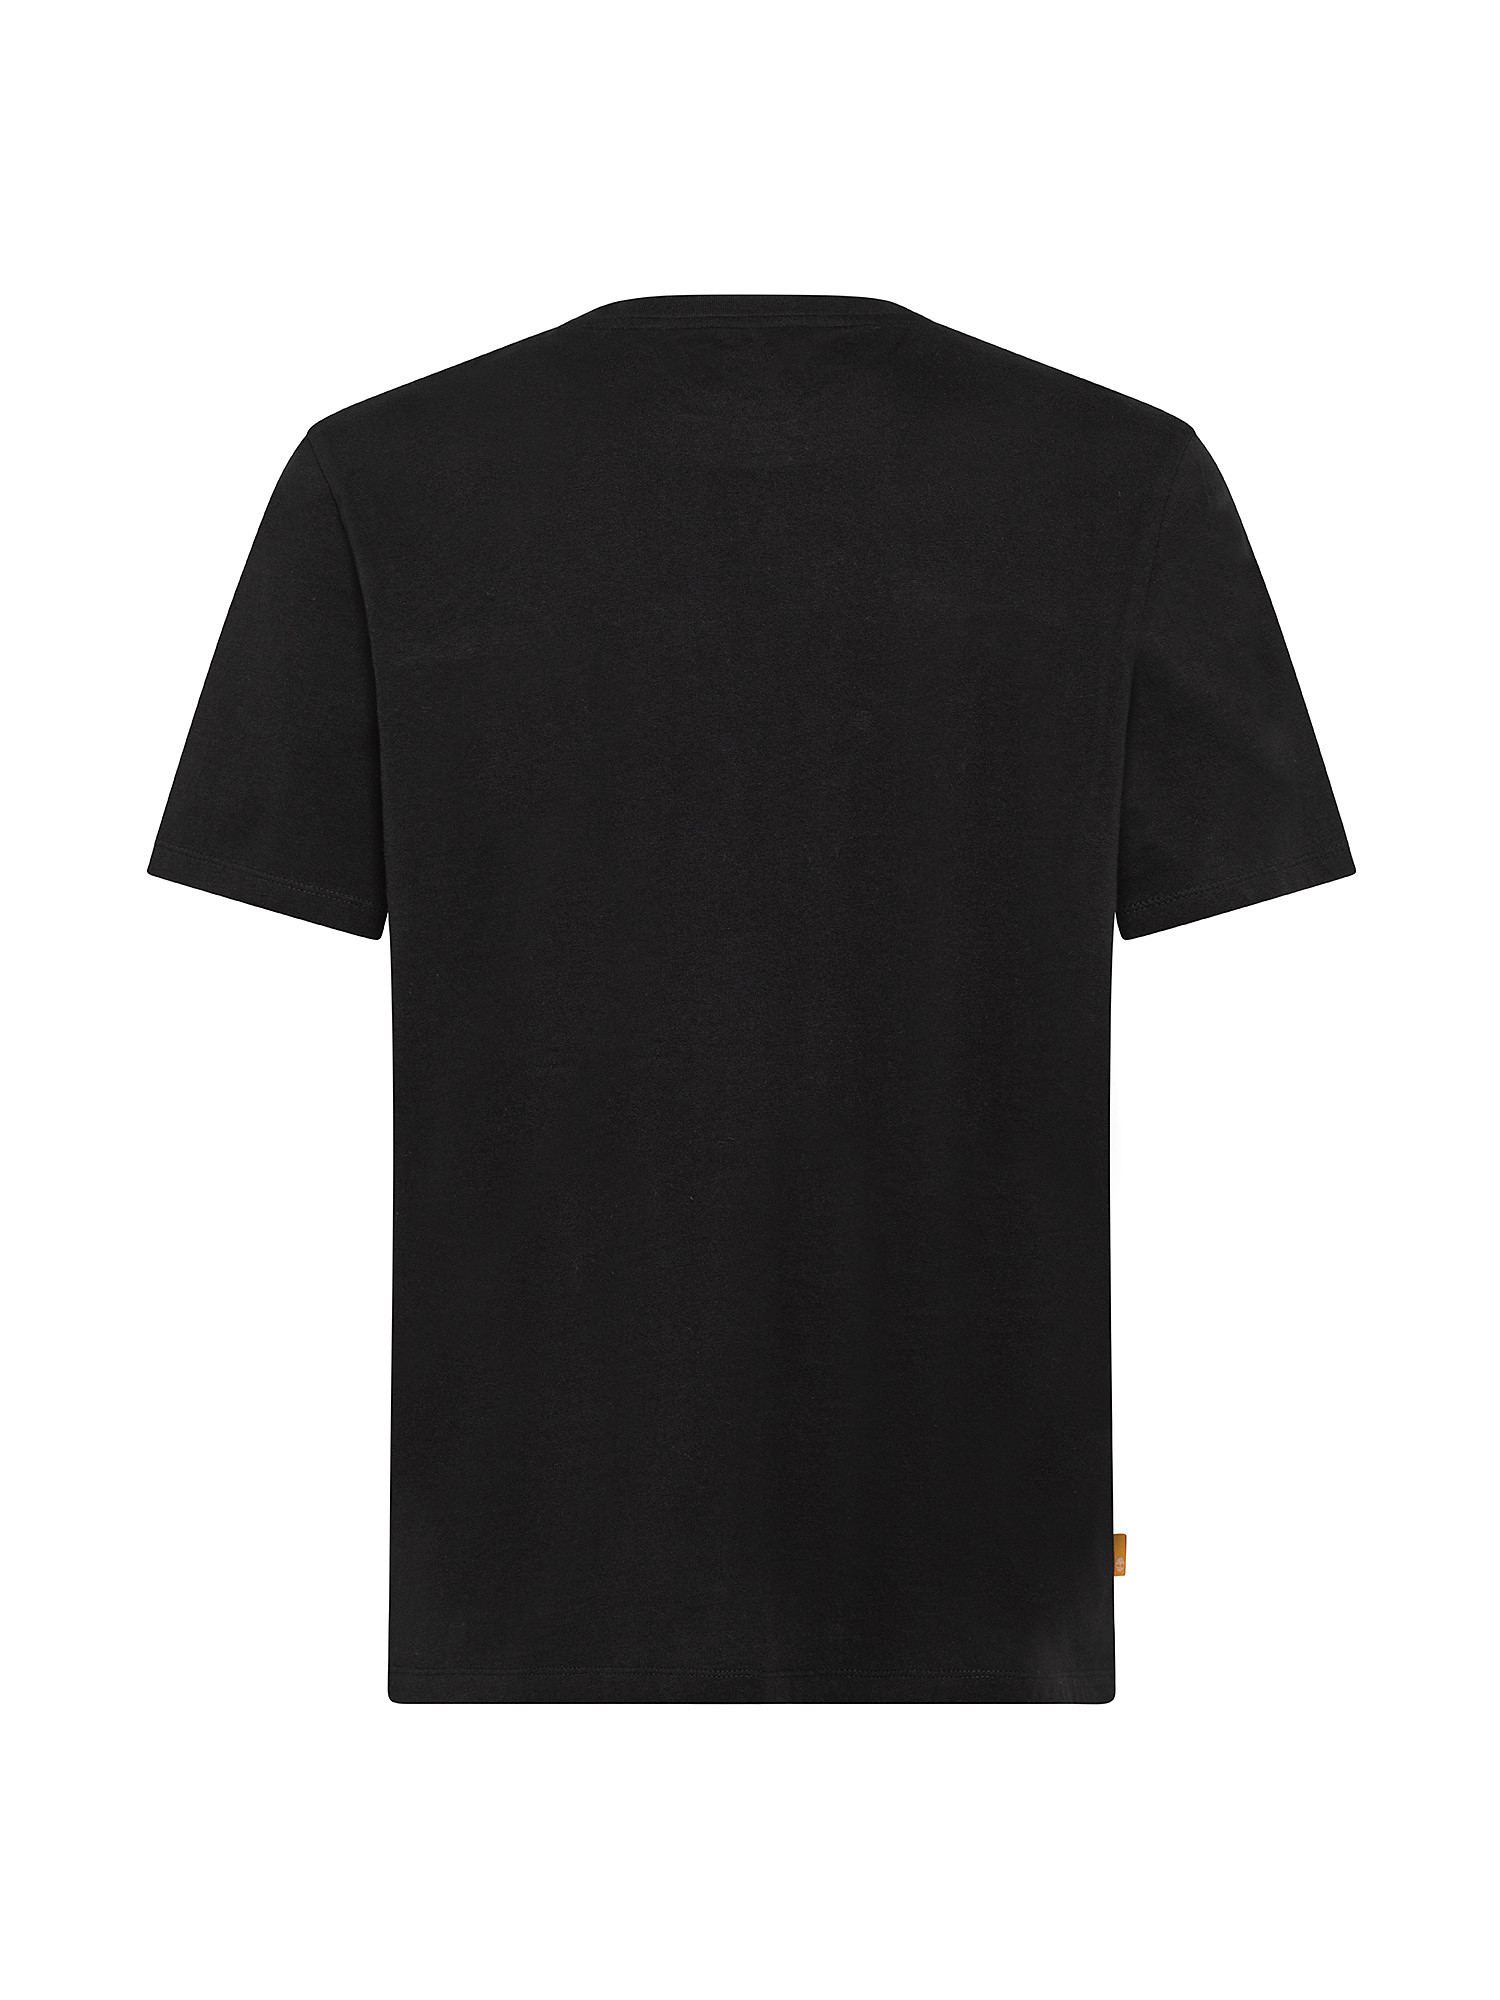 T-shirt da Uomo con Logo Mimetico, Nero, large